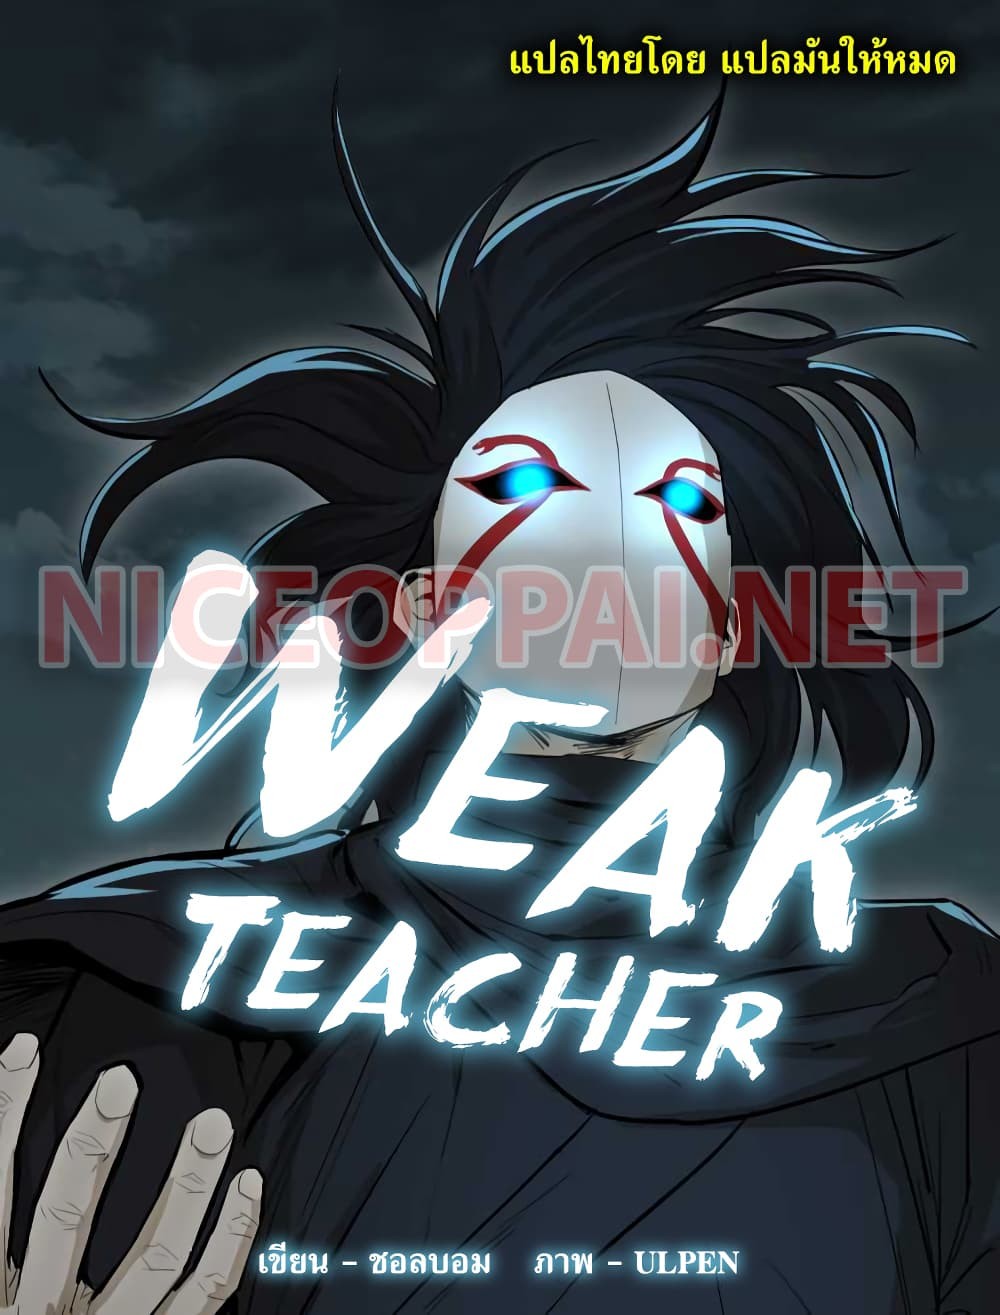 weak teacher